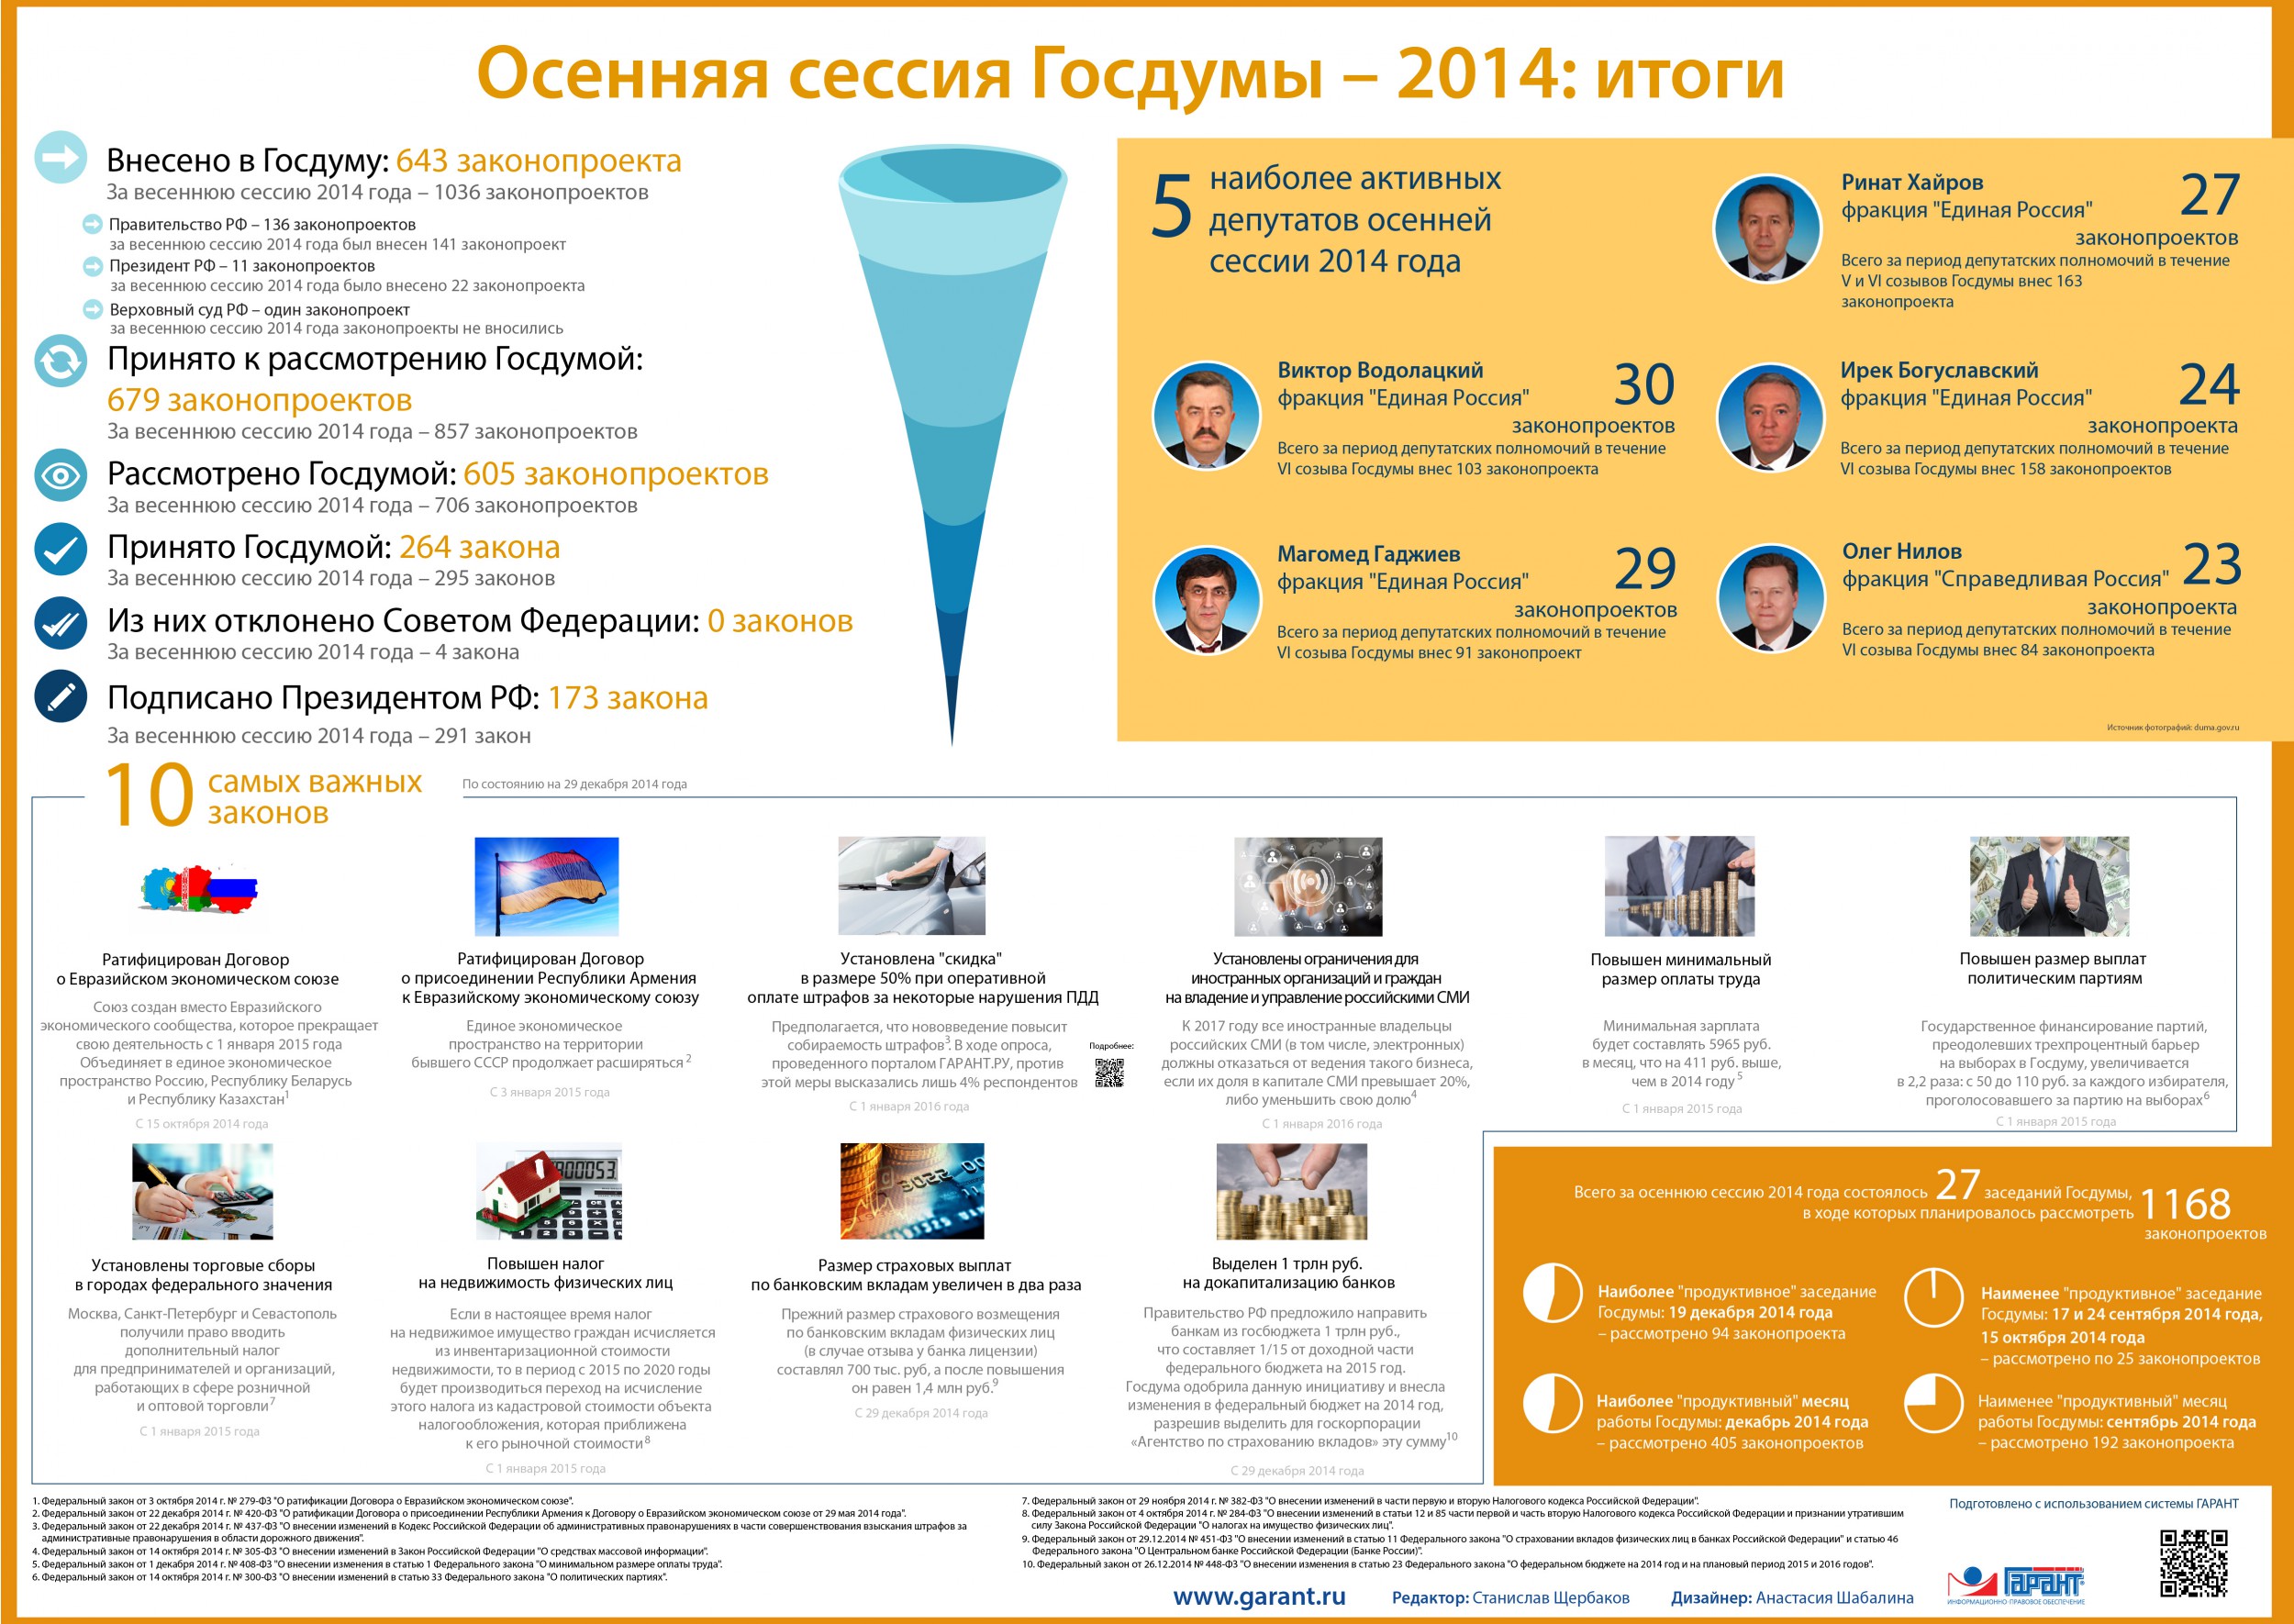 Осенняя сессия Госдумы 2014: итоги